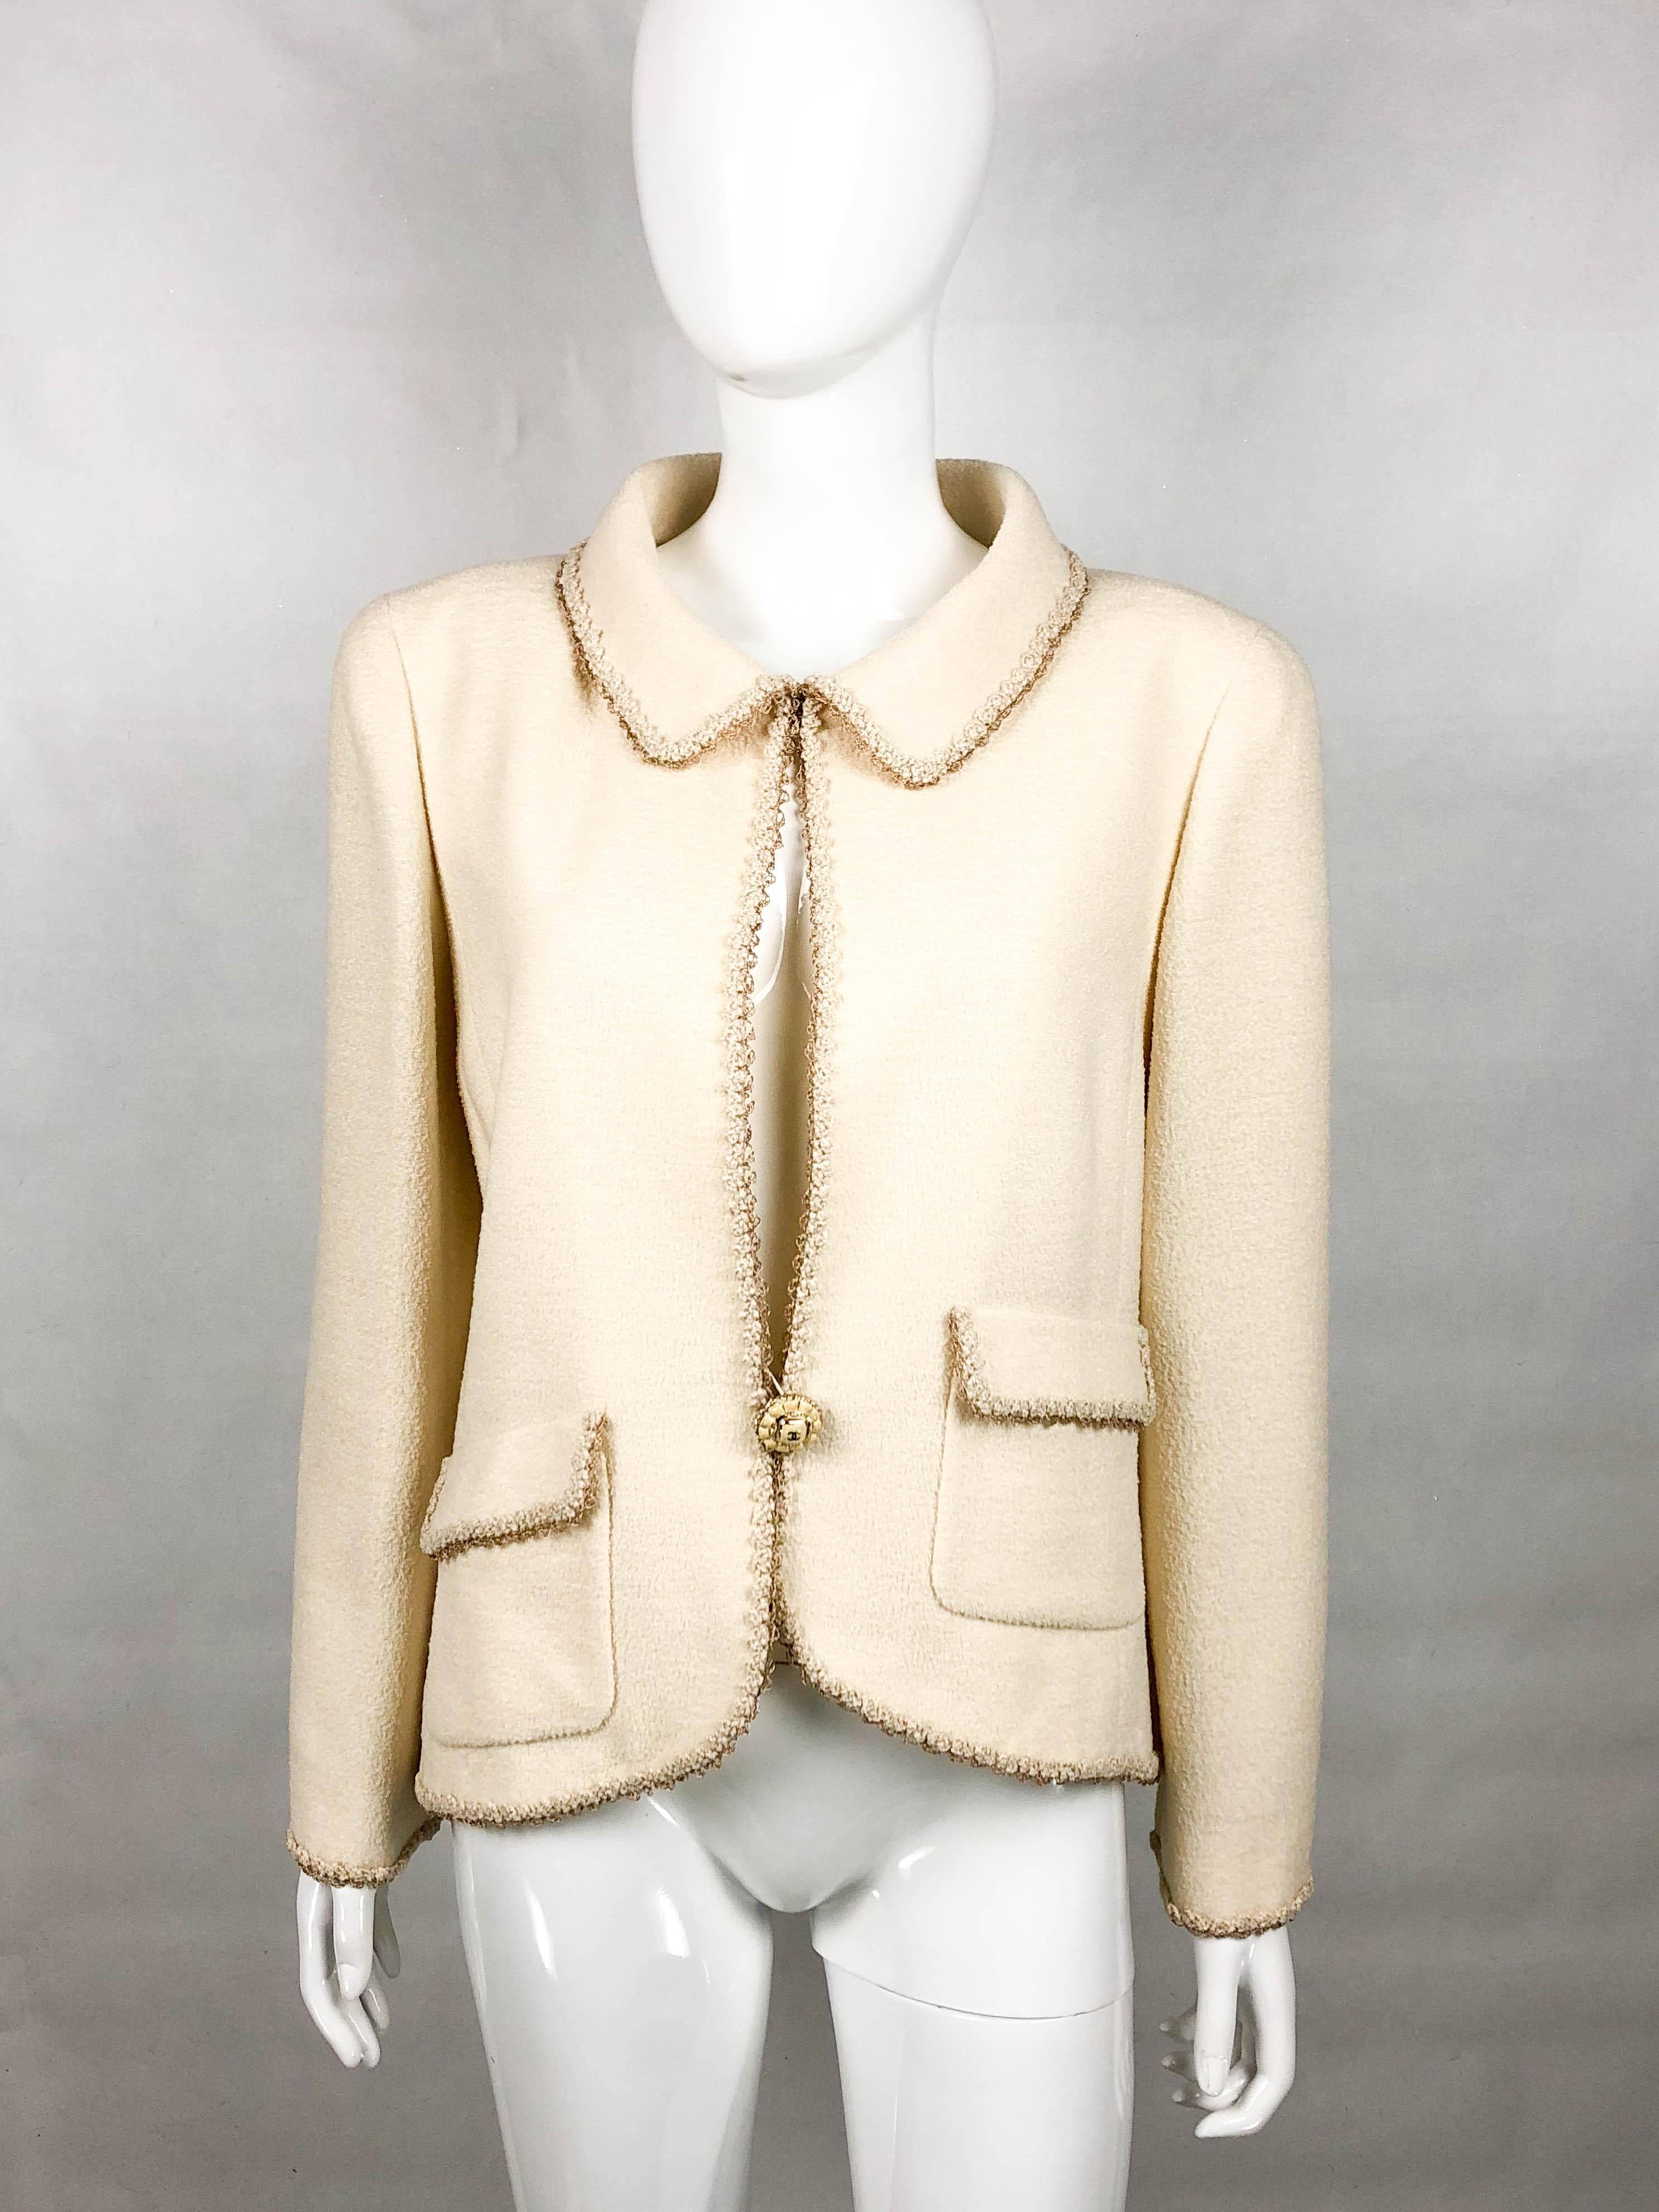 Women's 2010 Chanel Unworn Runway Look Cream Jacket With Gold Thread Trim For Sale